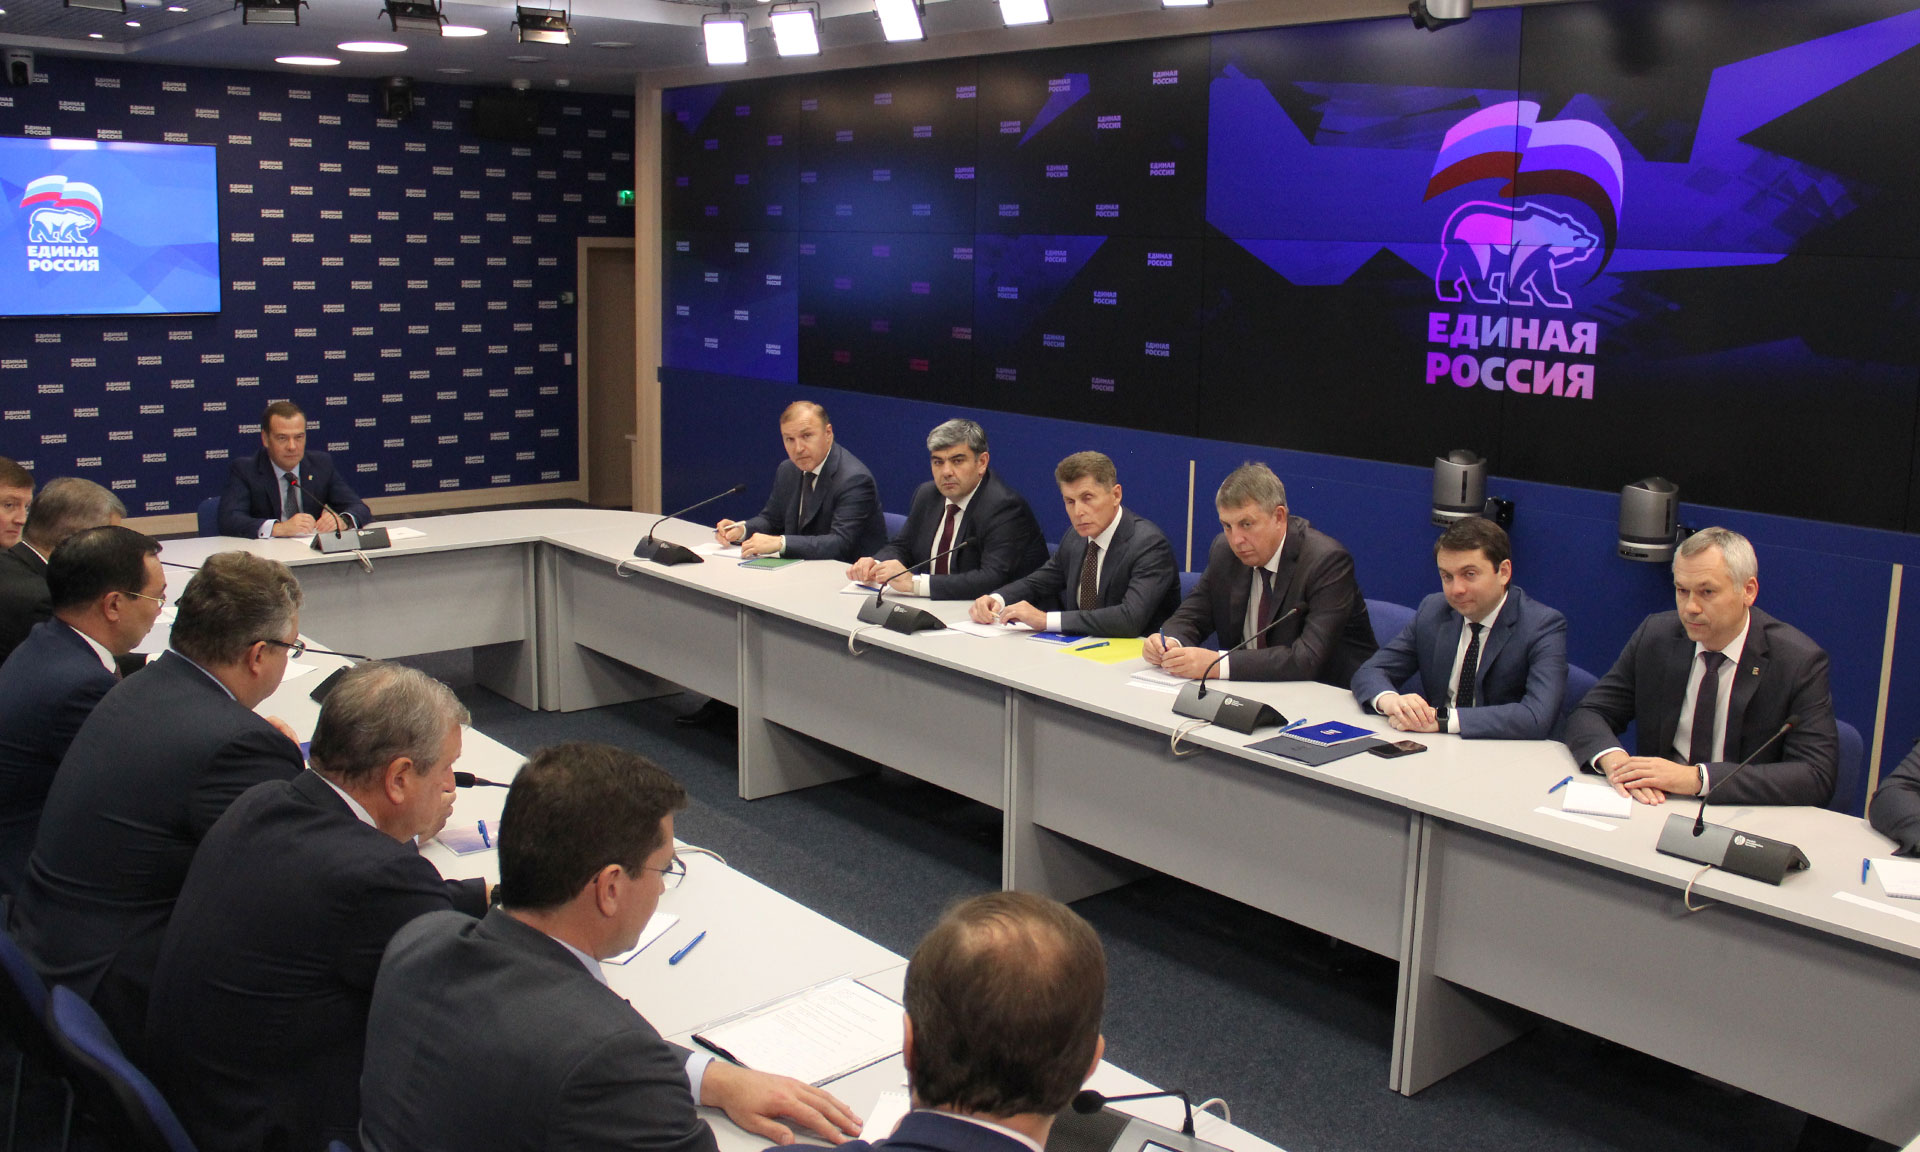 Брянский губернатор побывал на встрече с Дмитрием Медведевым. Речь шла о выборах 2021 года